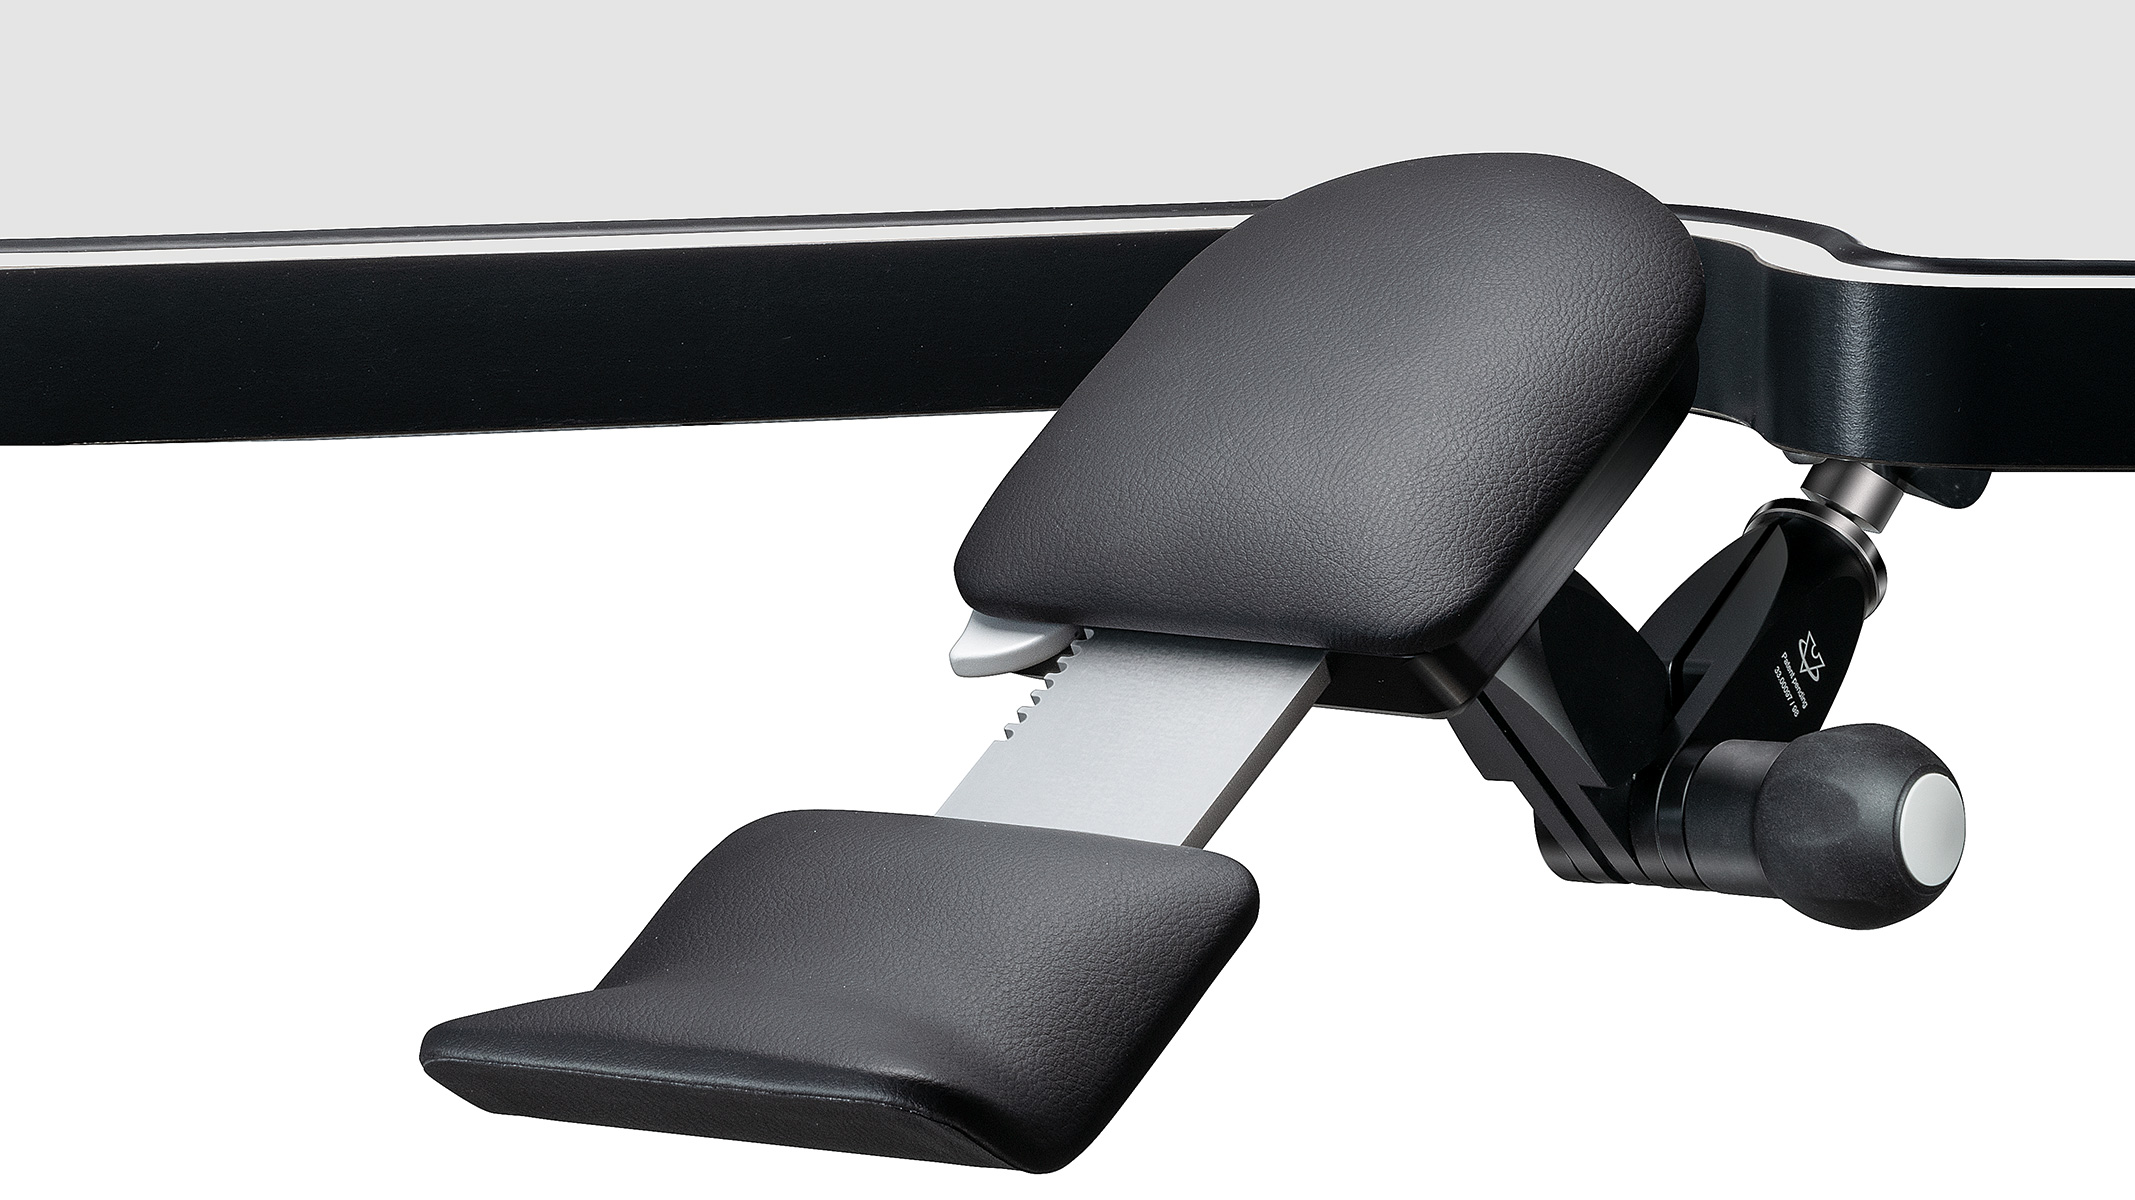 Accoudoirs, longueur dynamique de 280 - 350 mm, réglable en 3D, noir, équipement spécial pour Ergolift Evolution
(Ergo Suite, swiss patent)